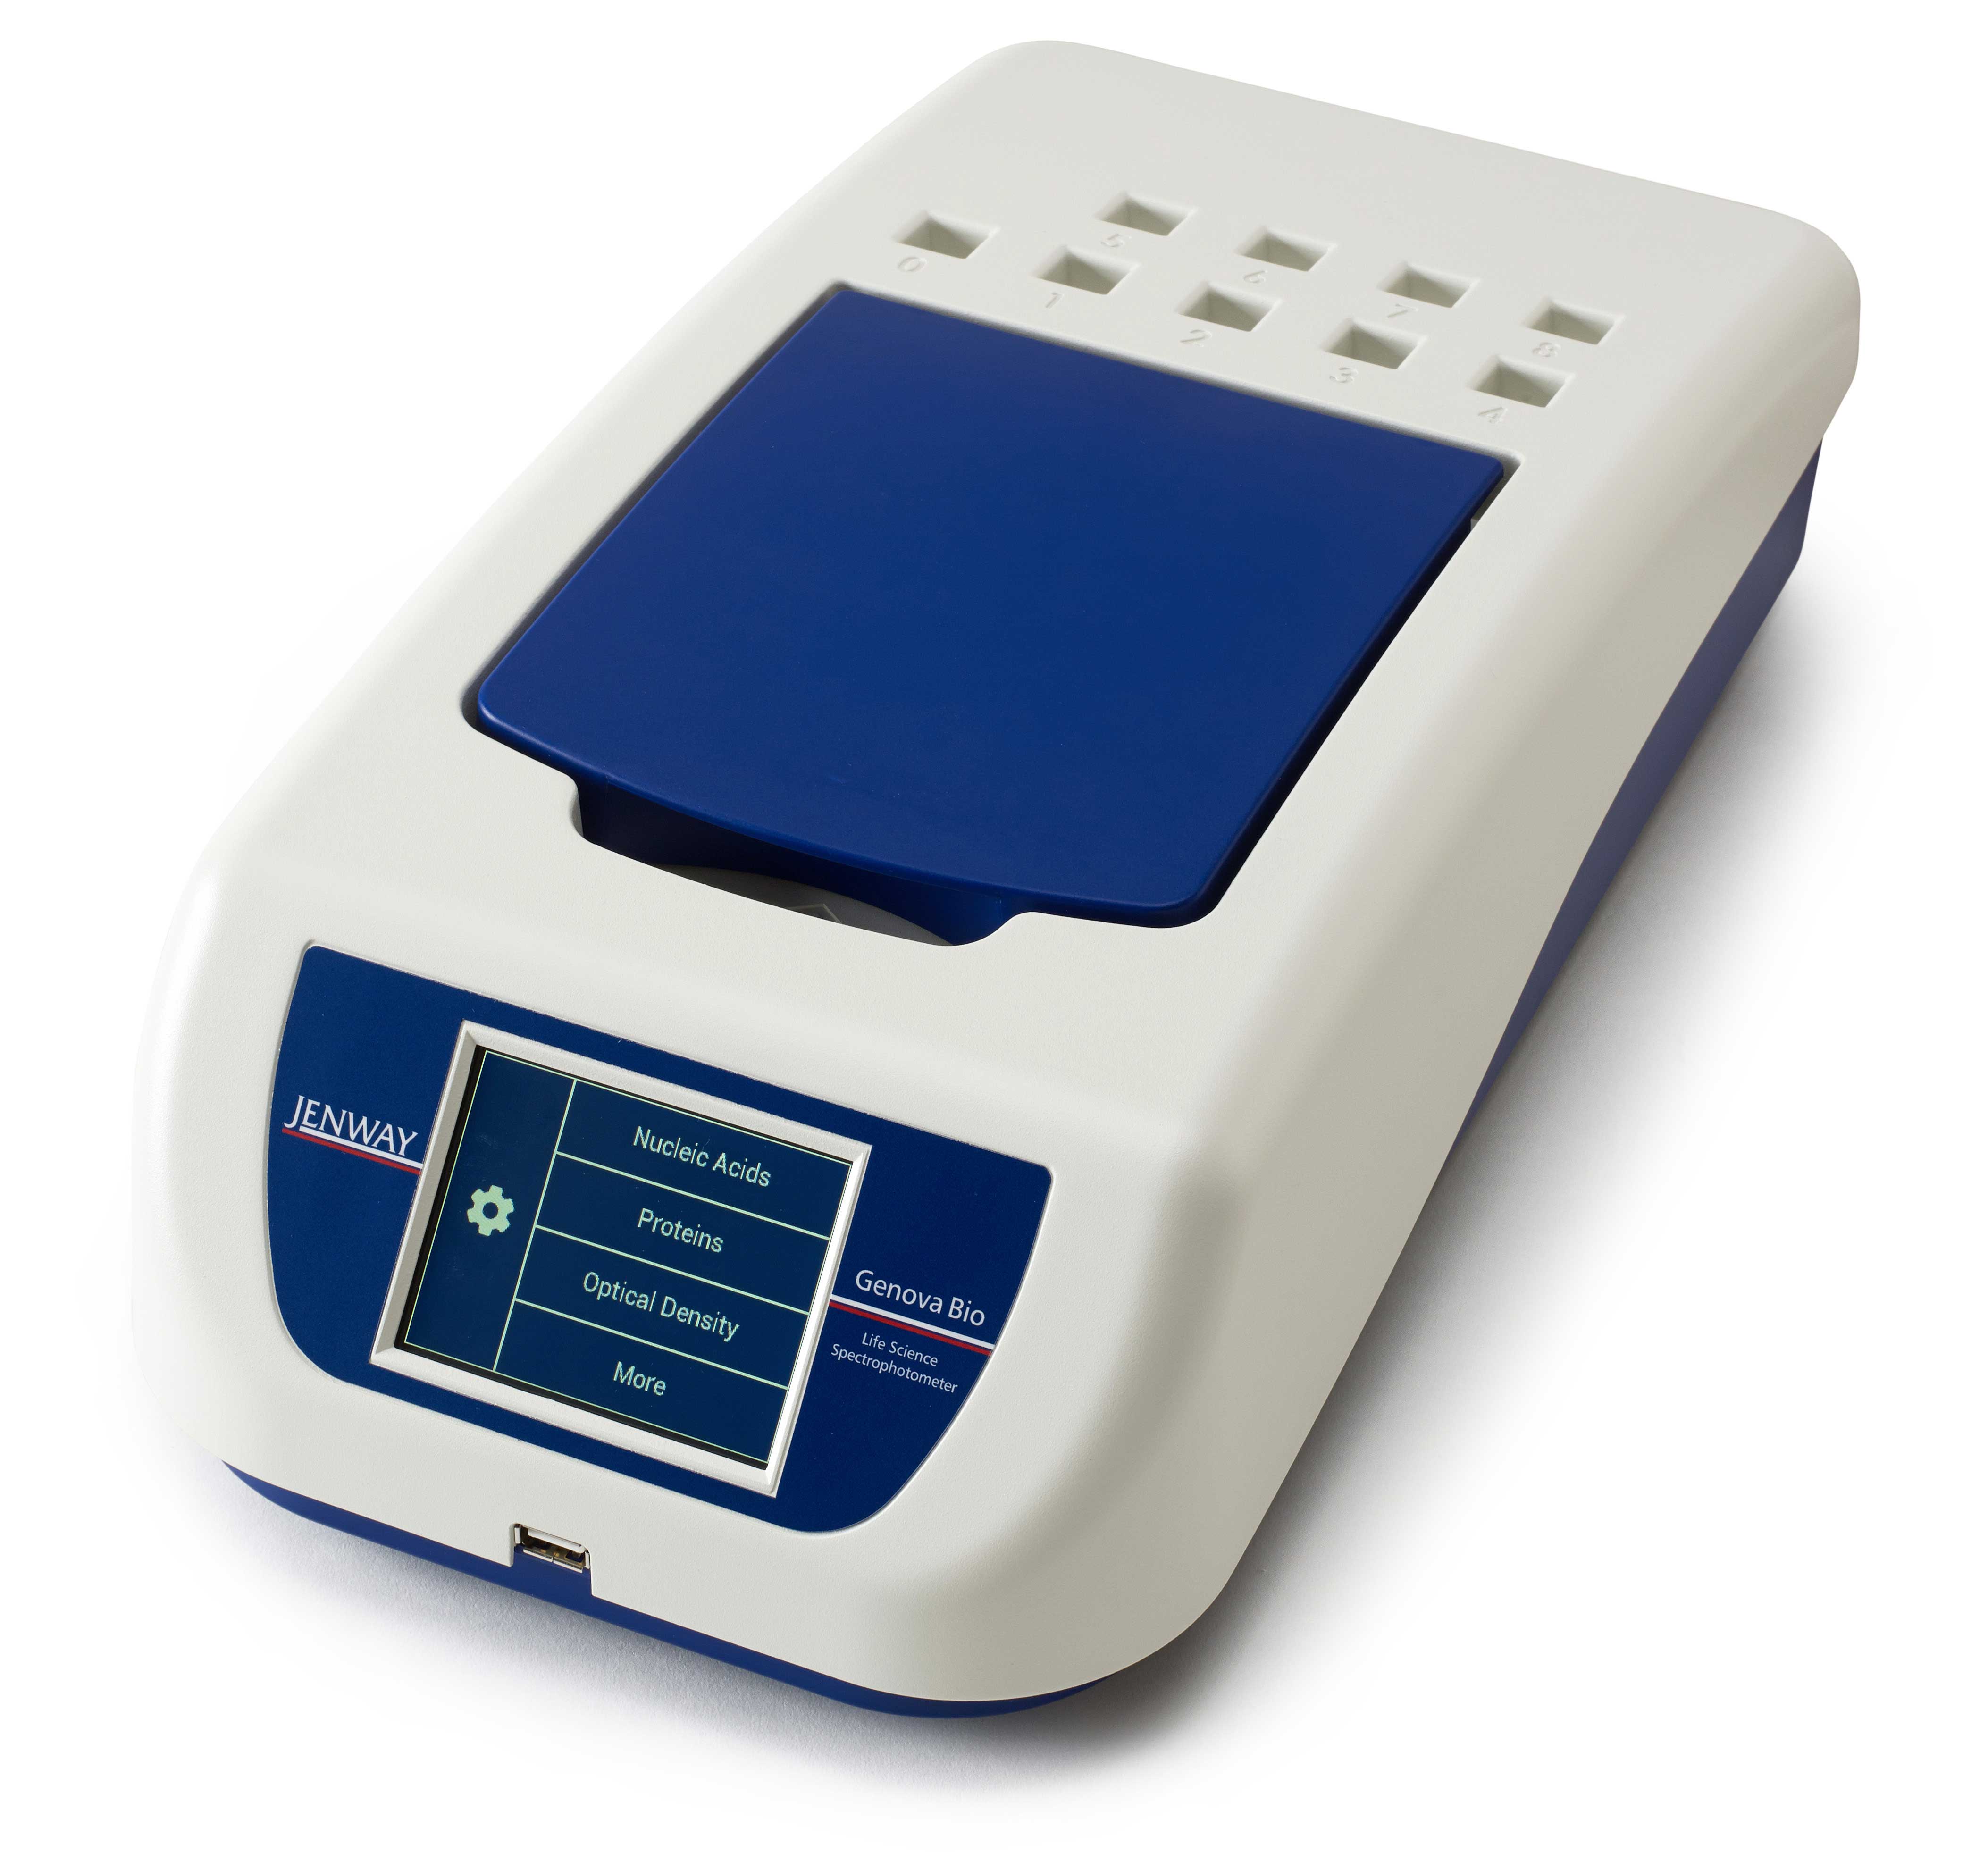 Genova Bio Life Science spectrophotometer